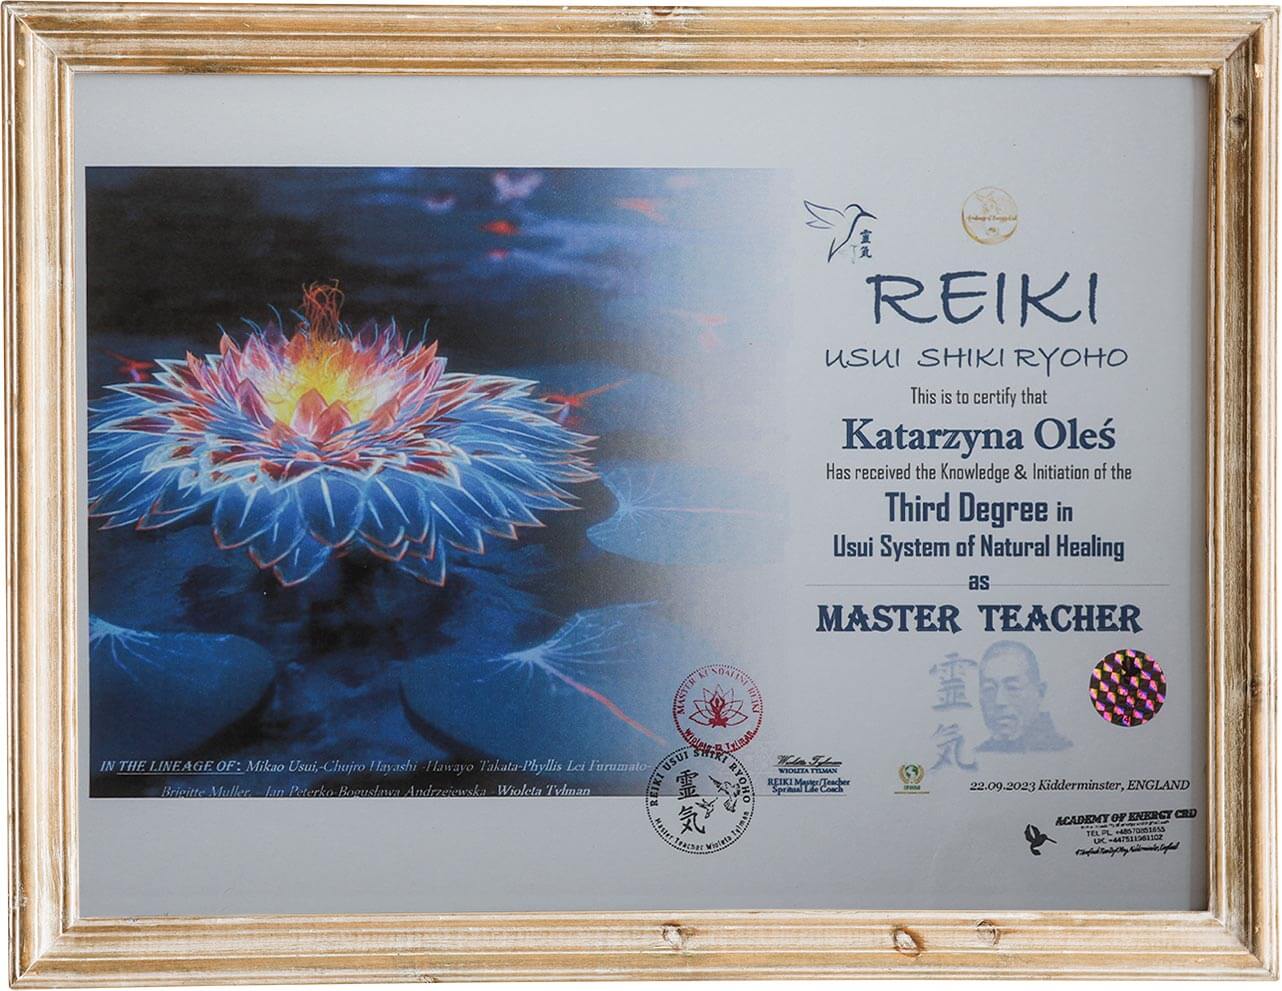 Certyfikat "Reiki" - trzeci stopień